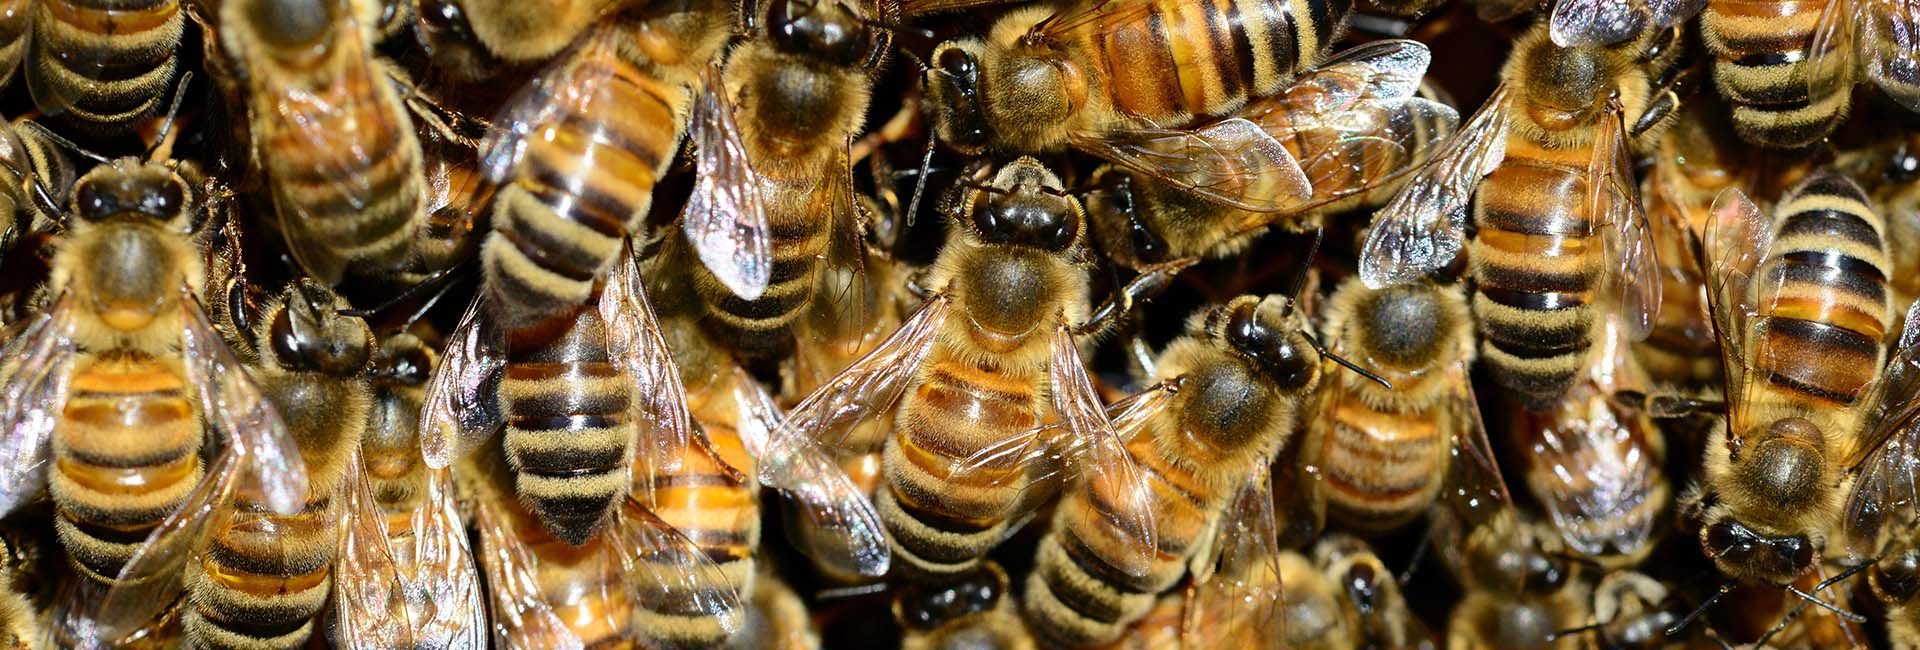 Honeybee Drones